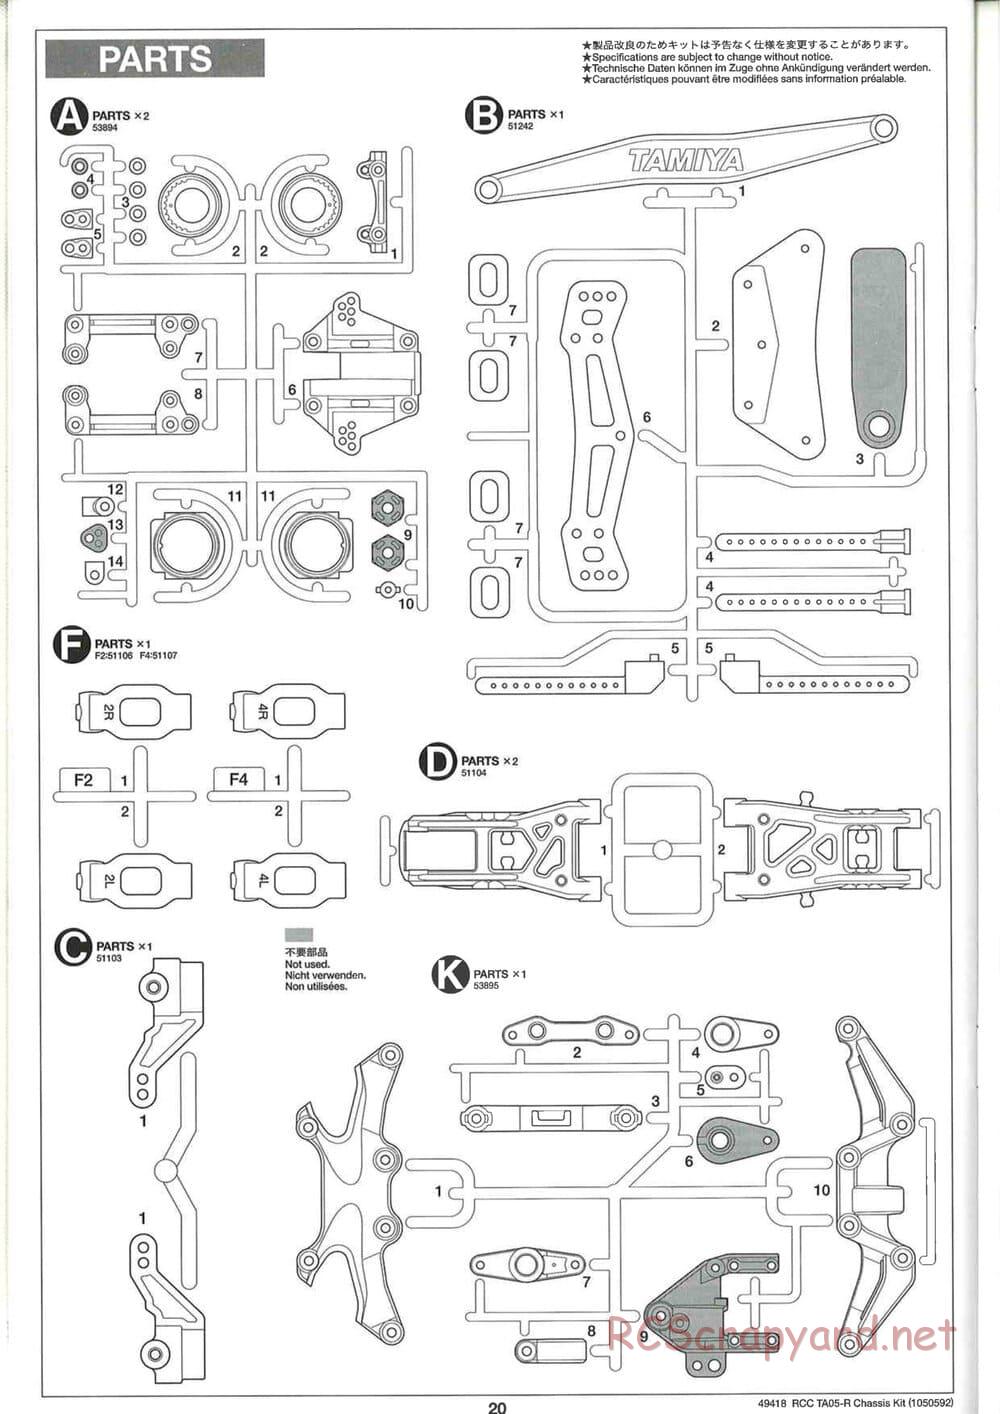 Tamiya - TA05-R Chassis - Manual - Page 20